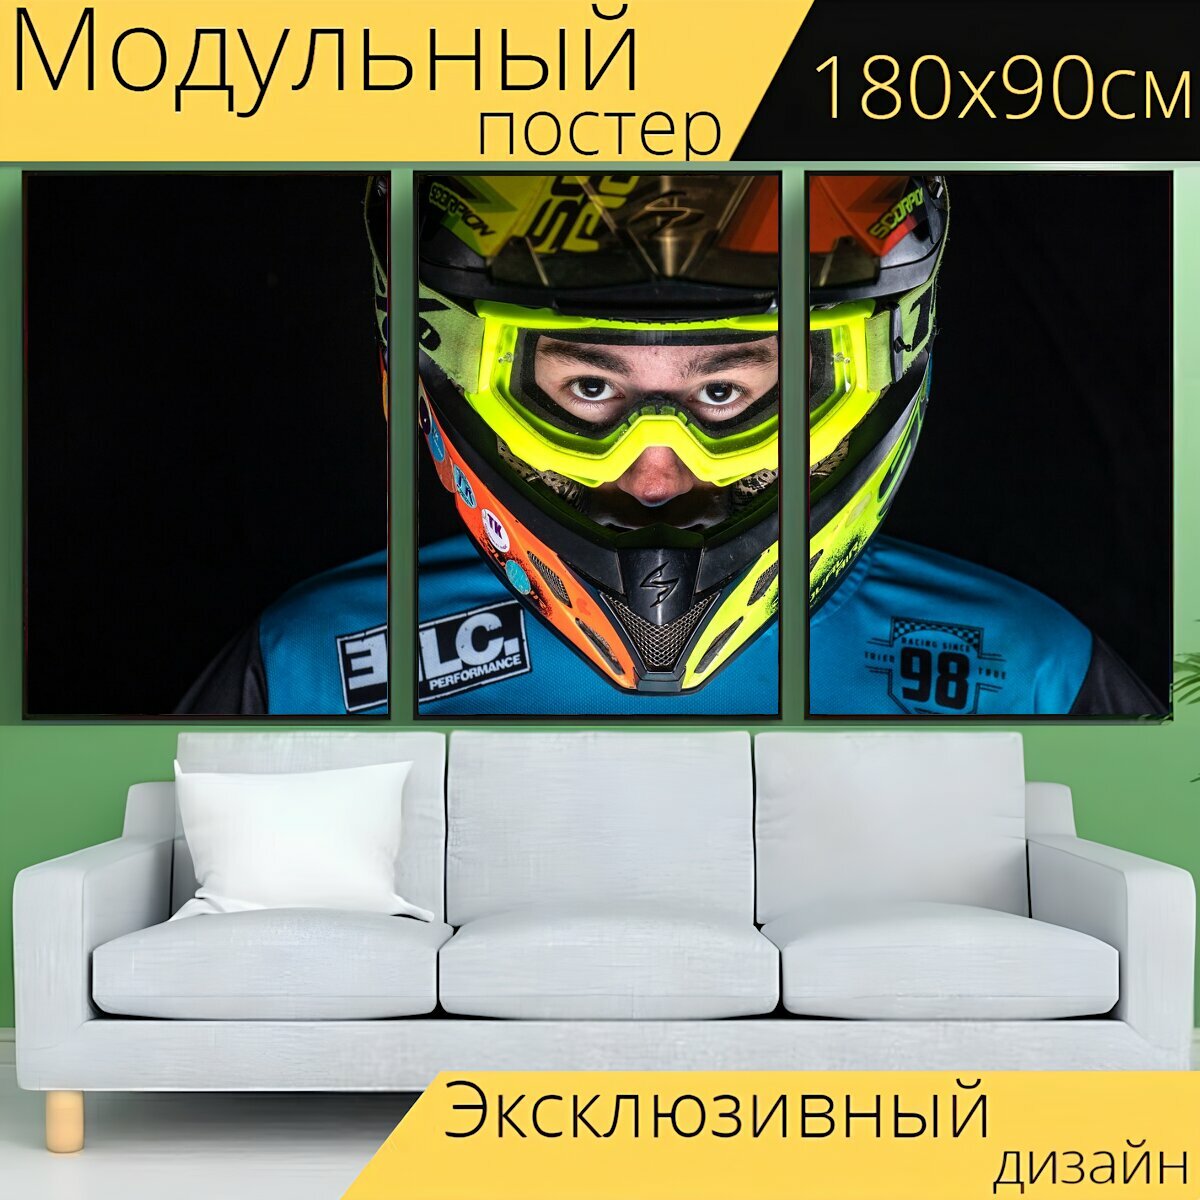 Модульный постер "Мотокросс, шлем, мотоцикл" 180 x 90 см. для интерьера